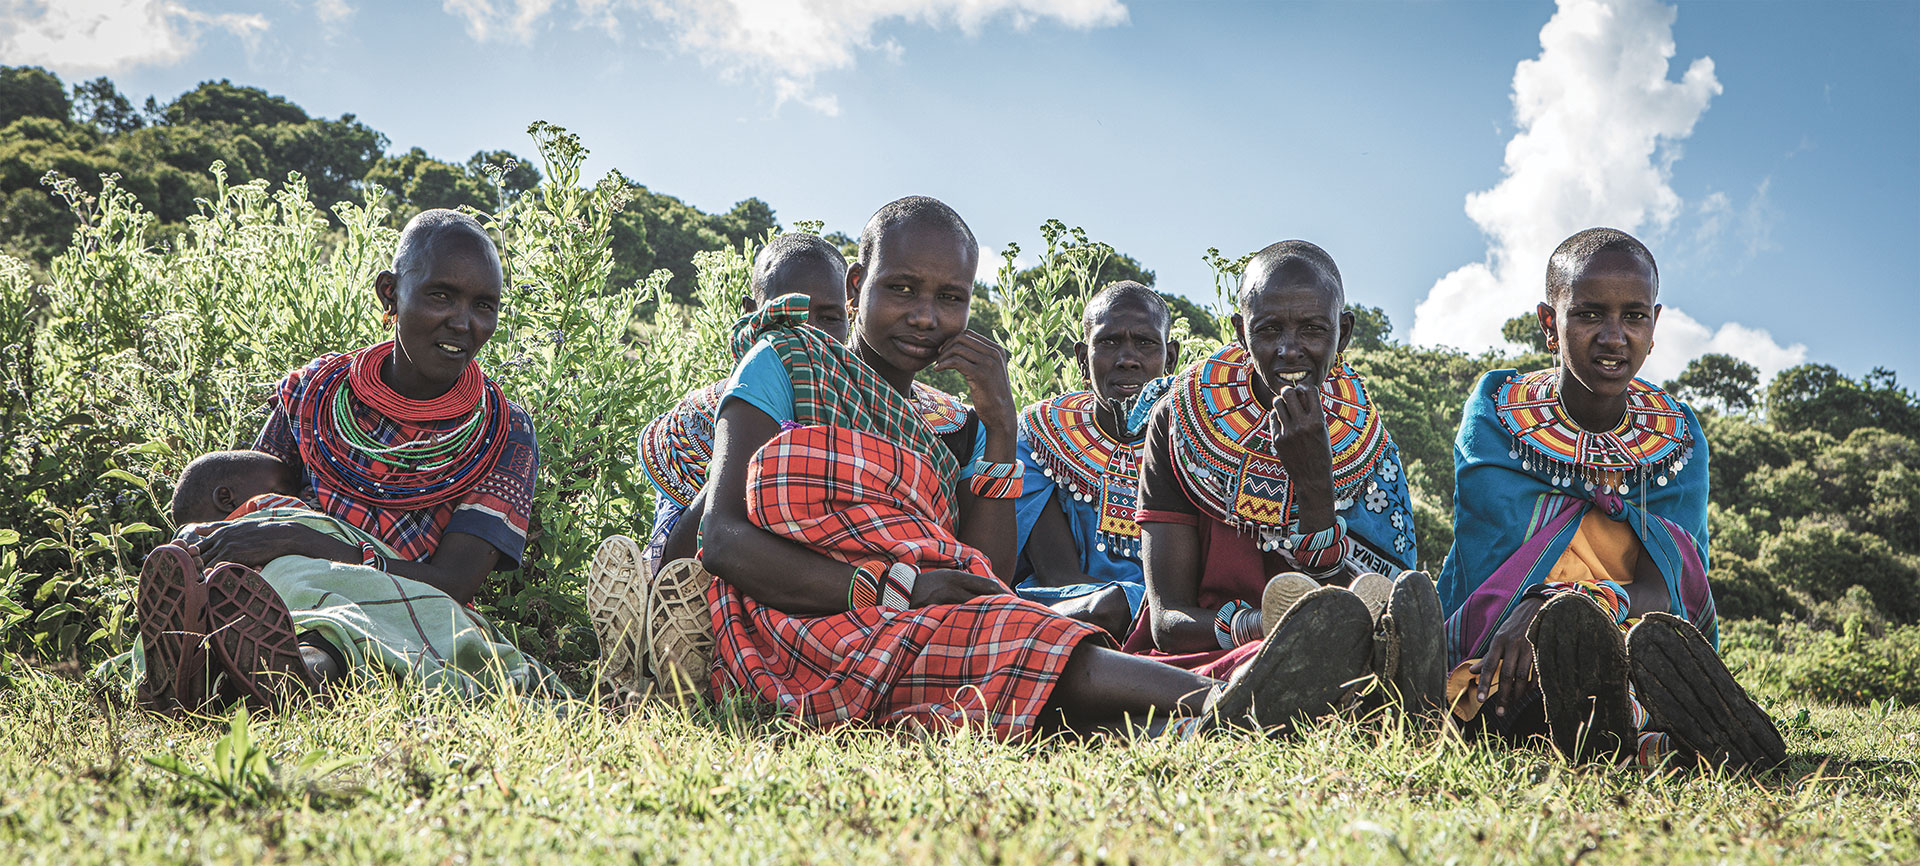 Samburu Women in Kenya